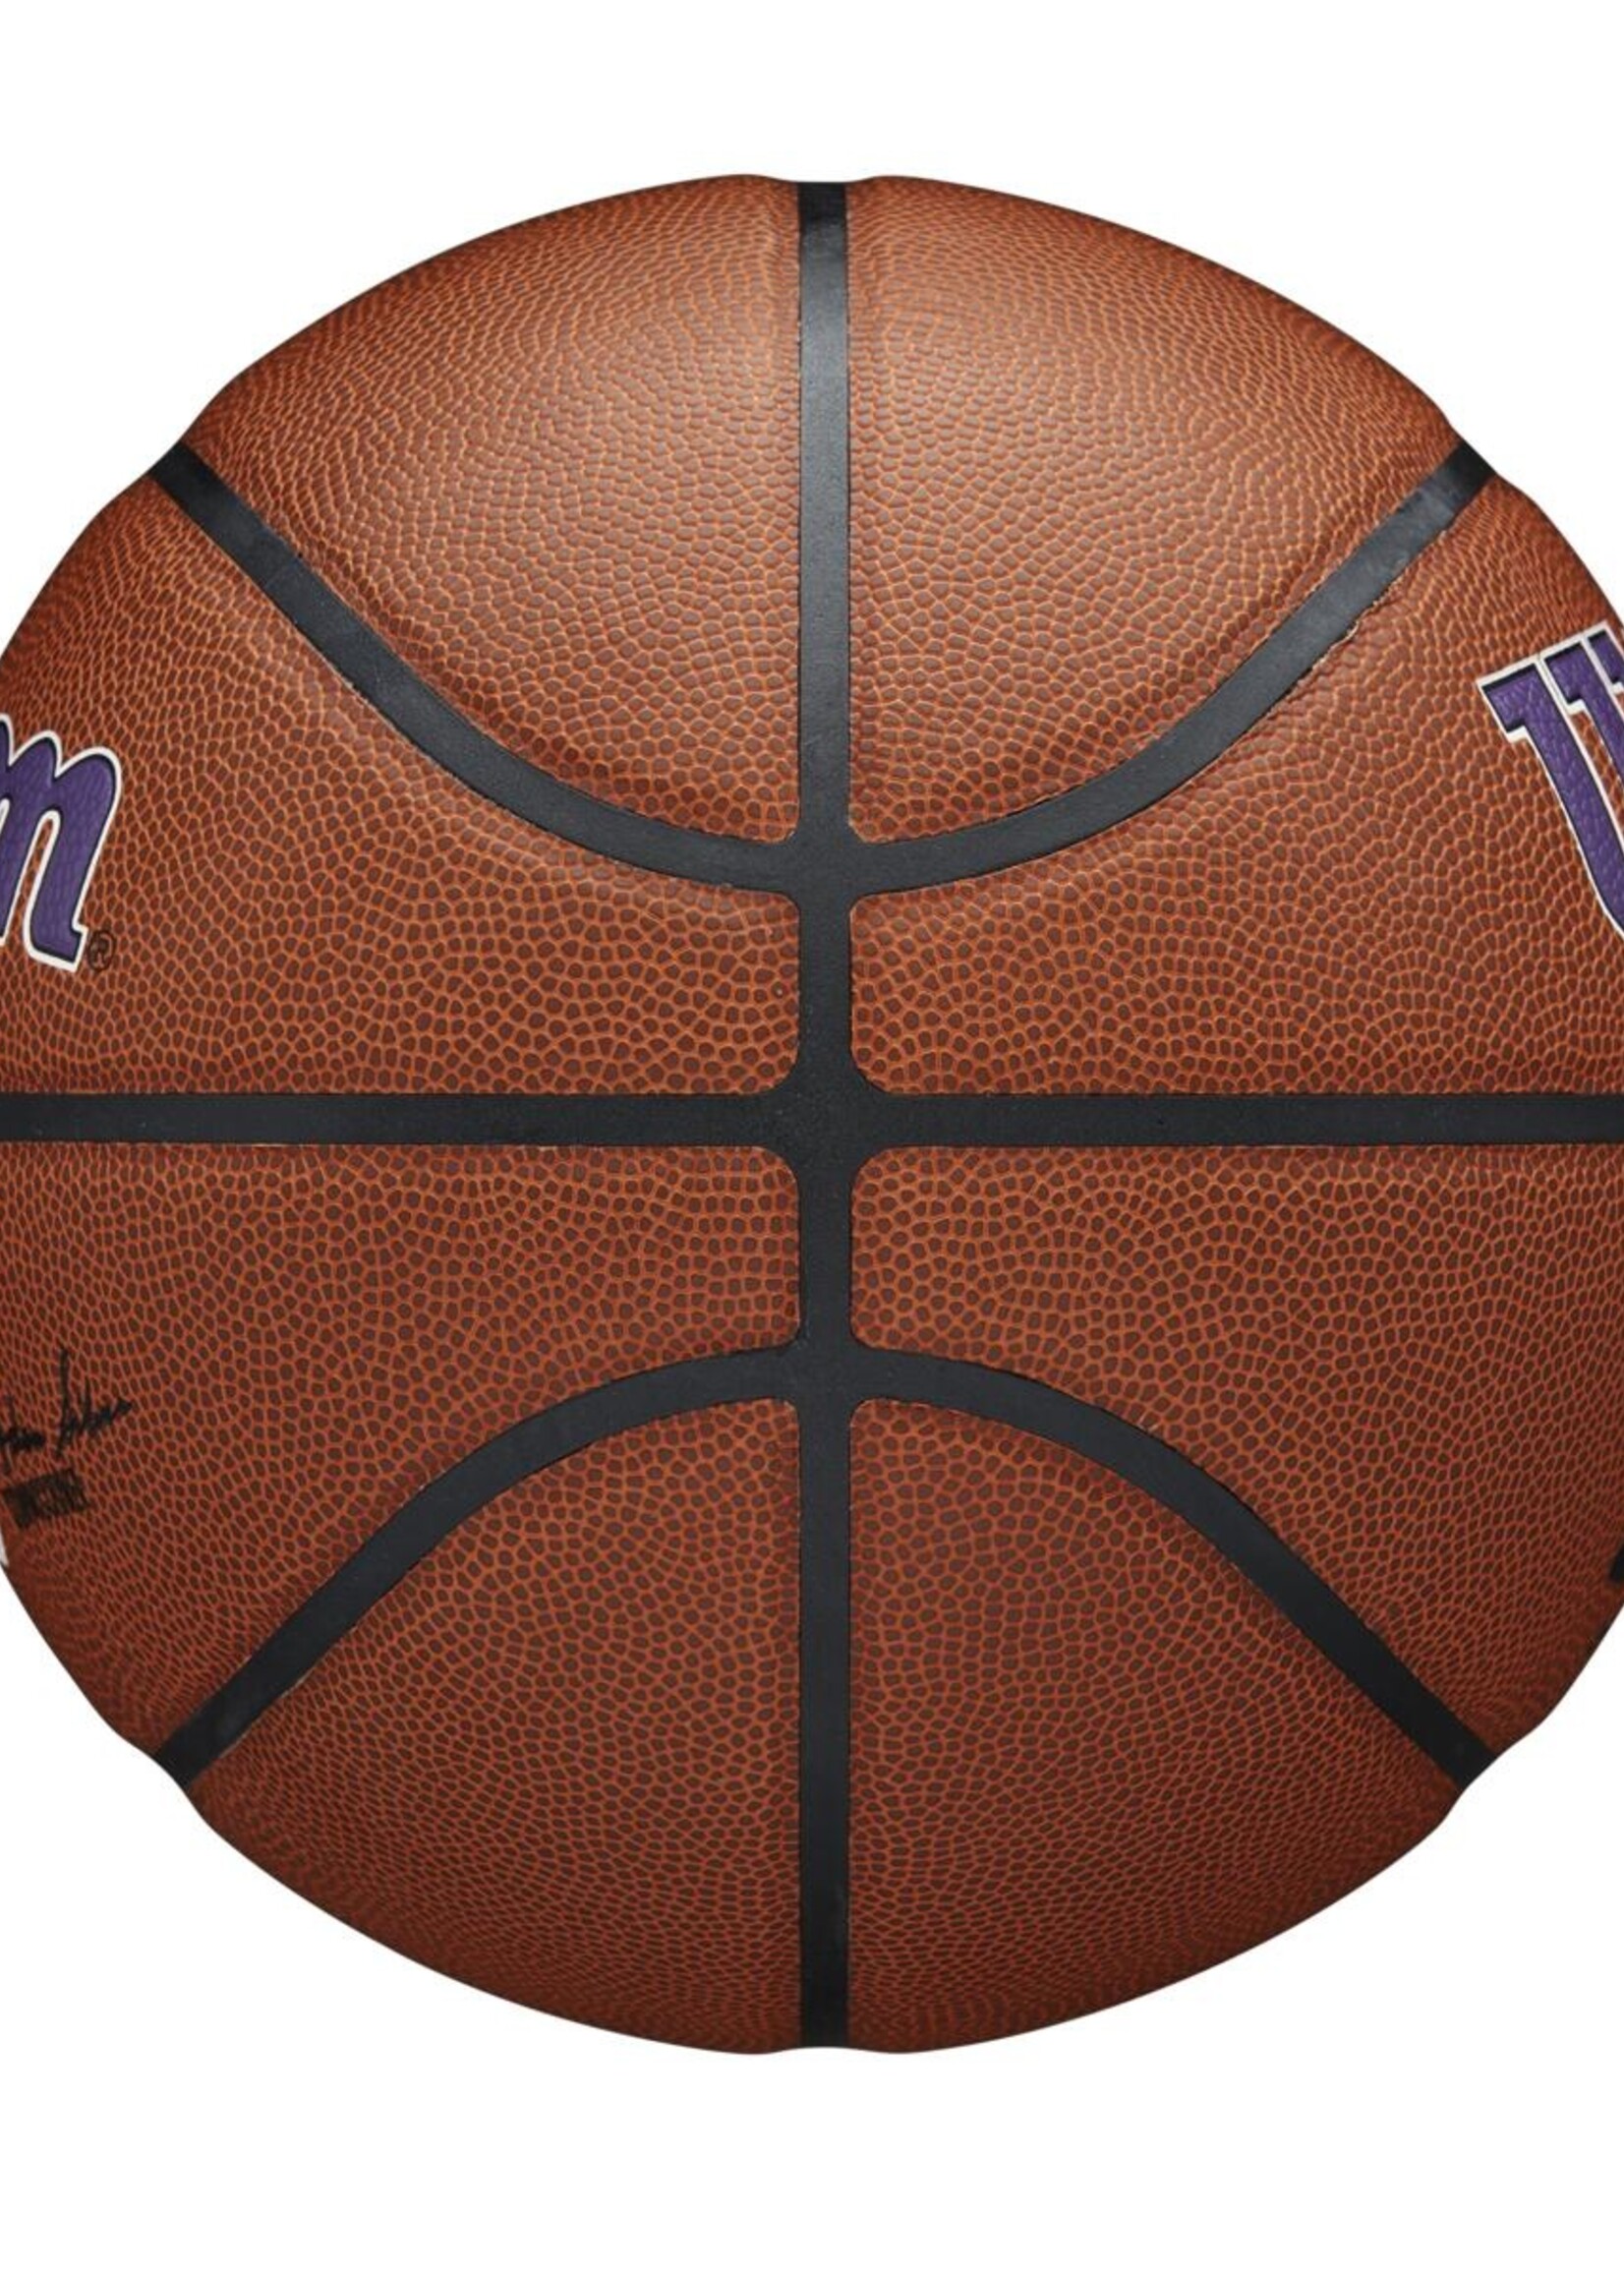 Wilson Wilson NBA LA LAKERS Composite Indoor / Outdoor Basketbal (7)